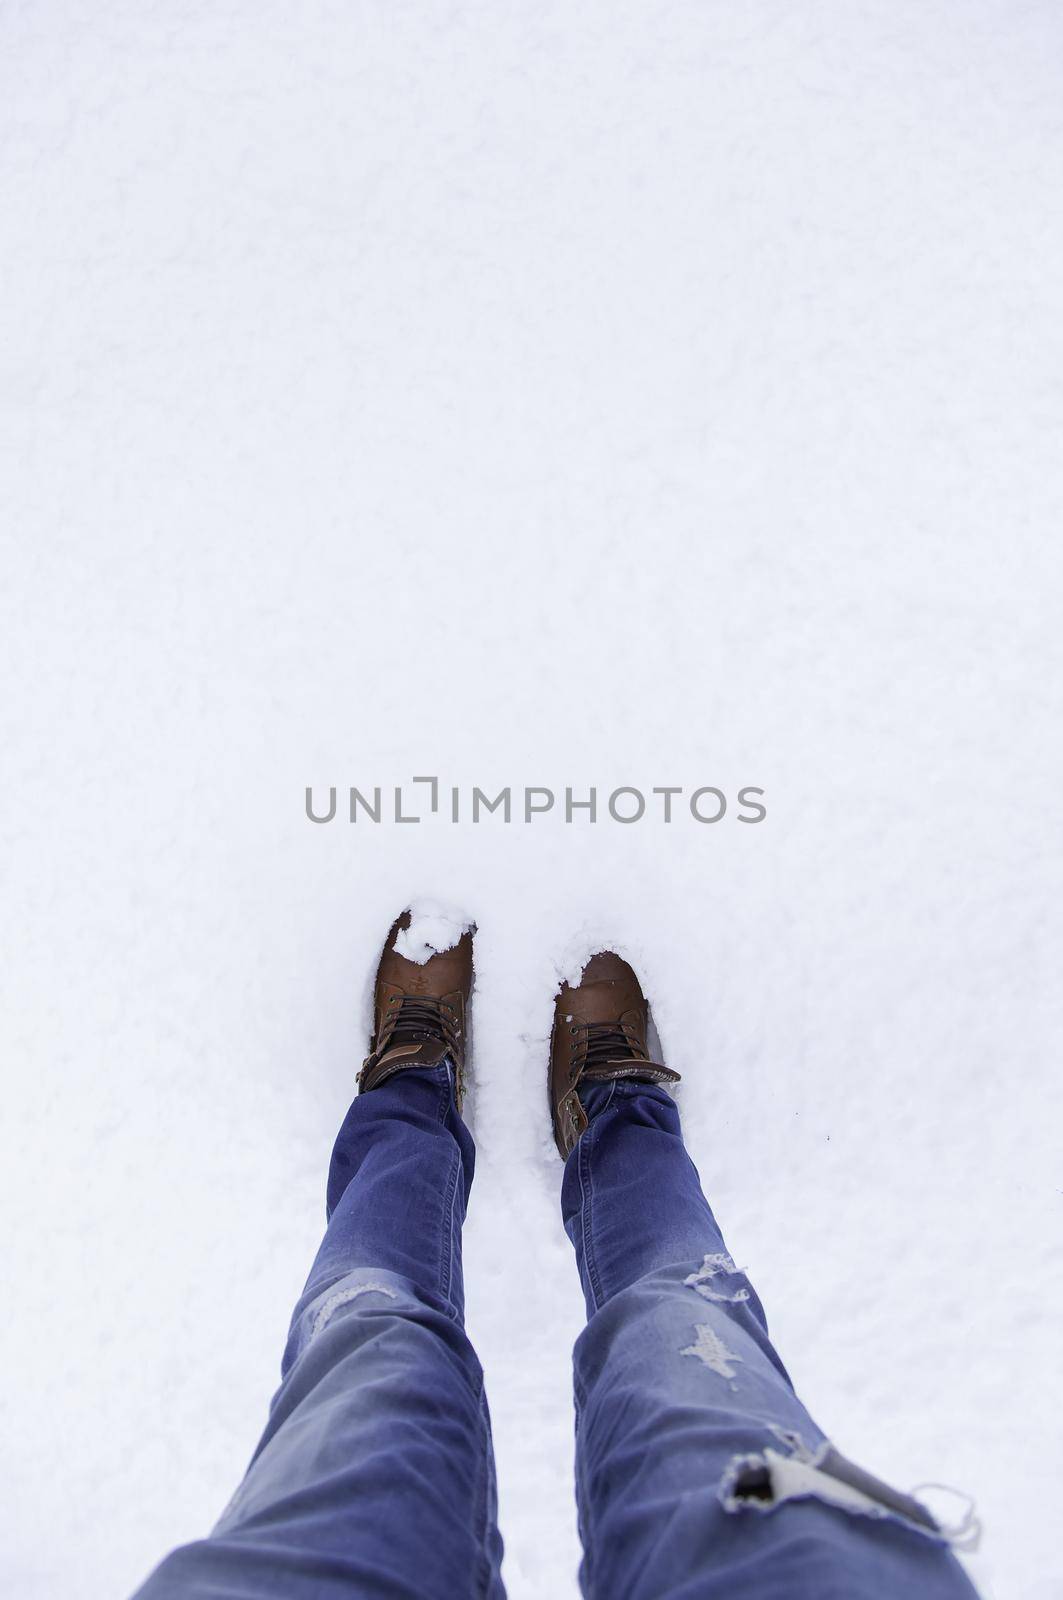 Man's feet in snow by esebene